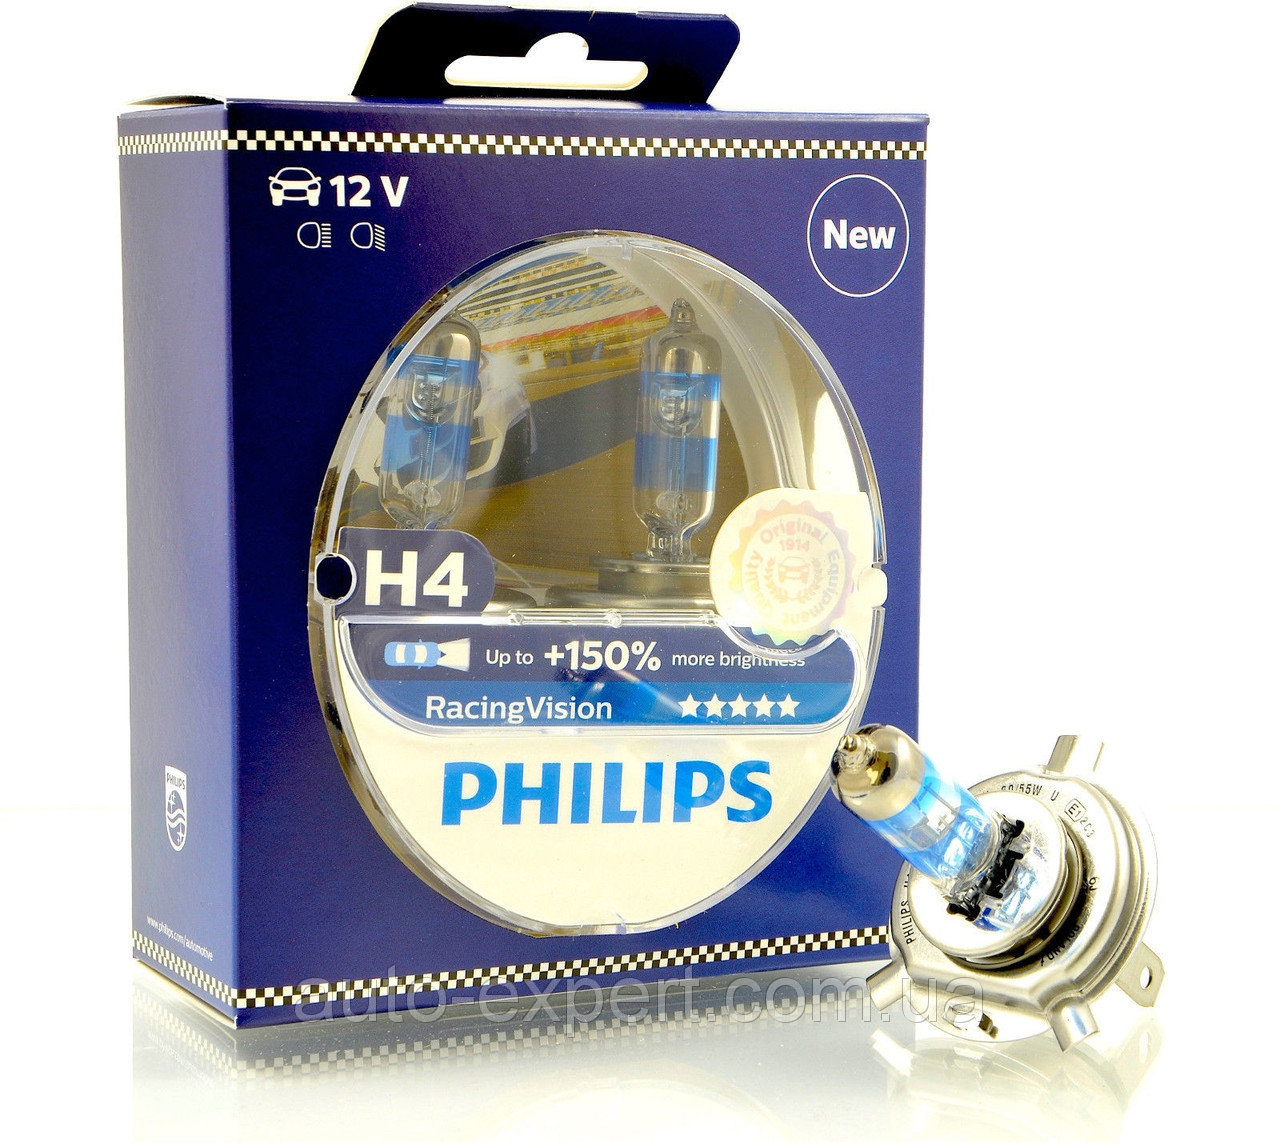 Филипс 150. Филипс лампы автомобильные h4. Лампочки h4 Philips +150. Галогеновые лампы h4 Филипс +150. Philips Racing Vision +150 h4.